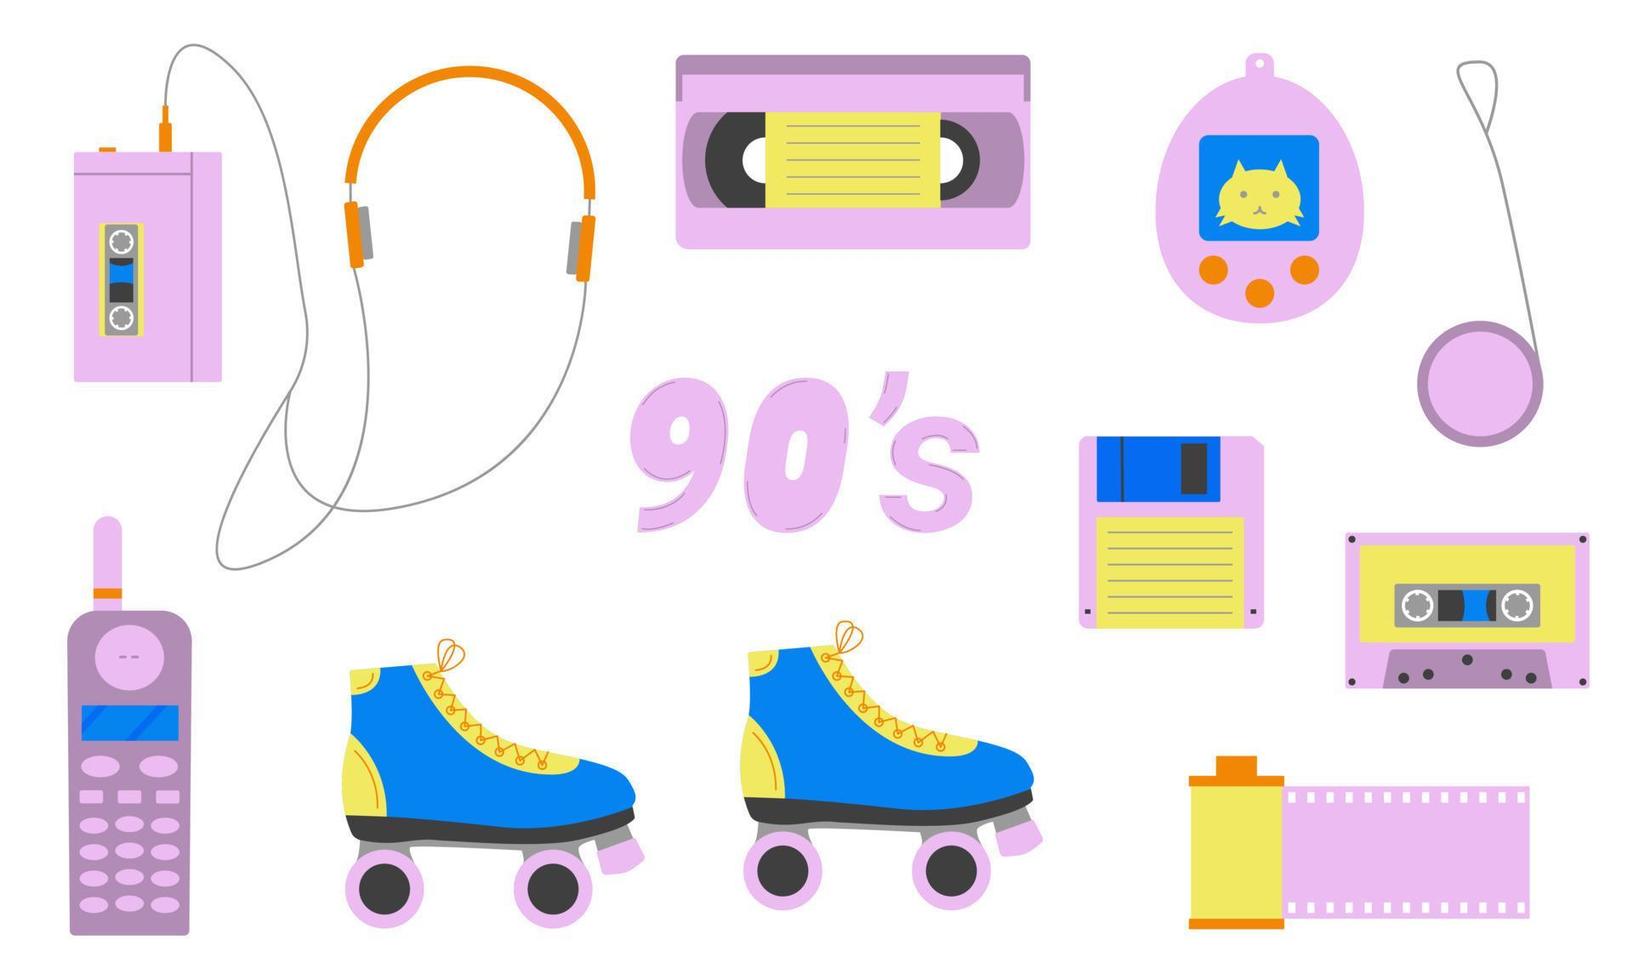 conjunto de elementos de los años 80 y 90. objetos clásicos de las últimas décadas. estilo plano ilustración vectorial vector